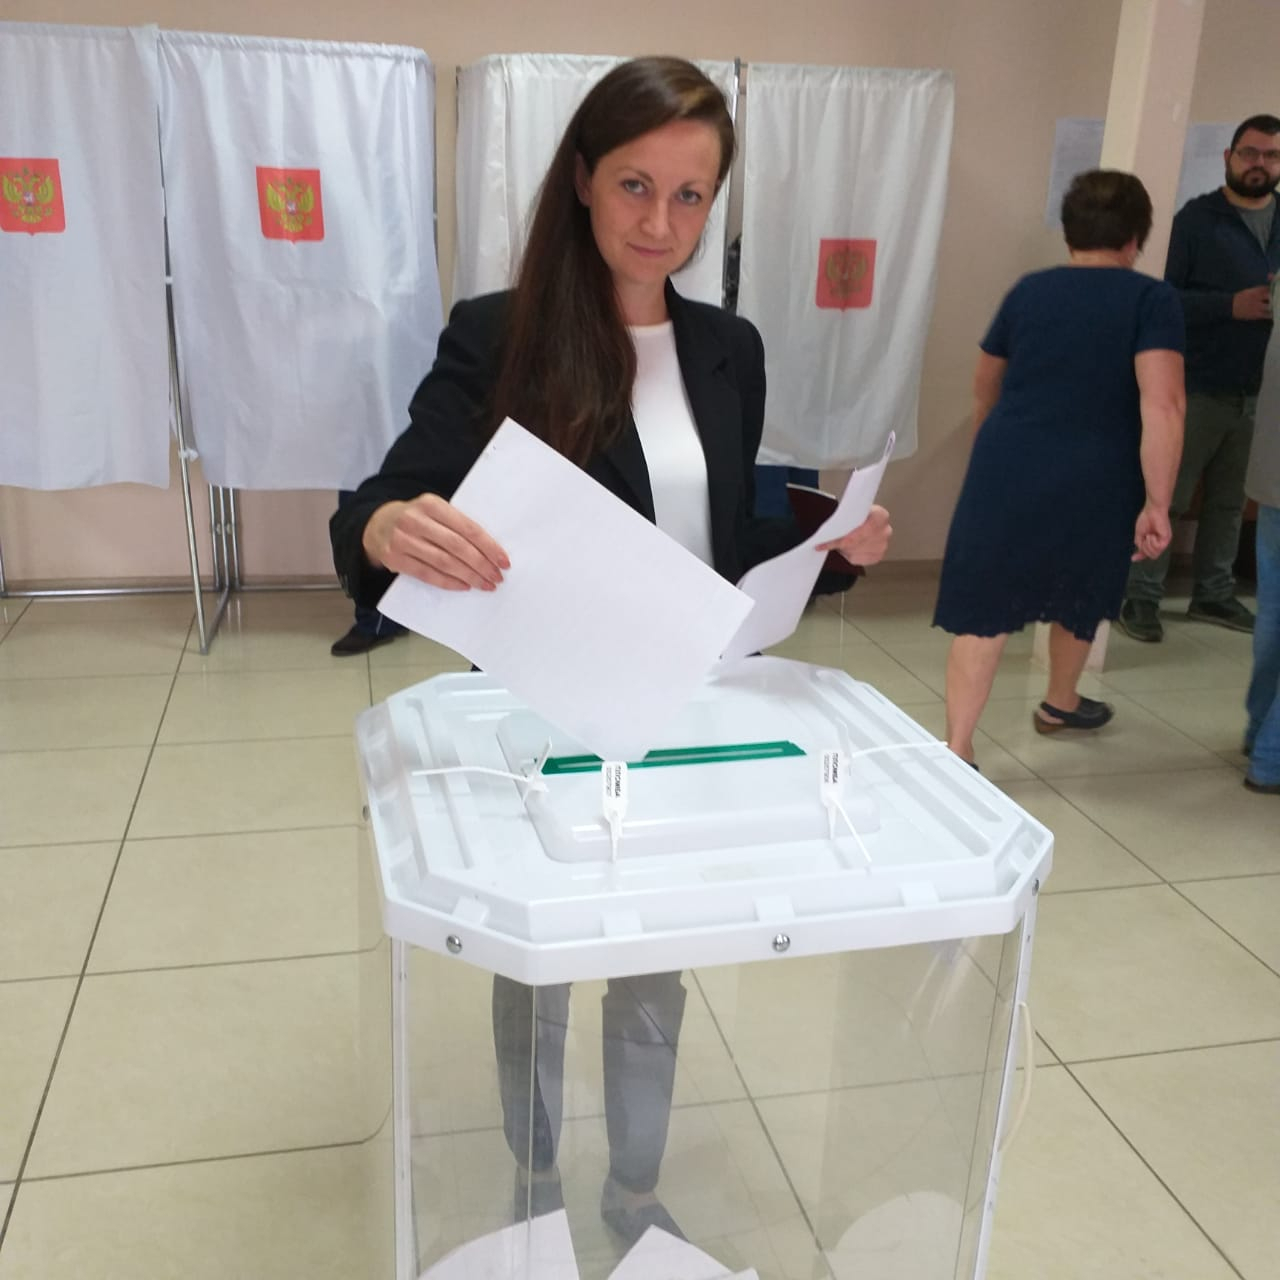 Сидоров проиграл выборы главы администрации в Заборье Ирине Копыловой